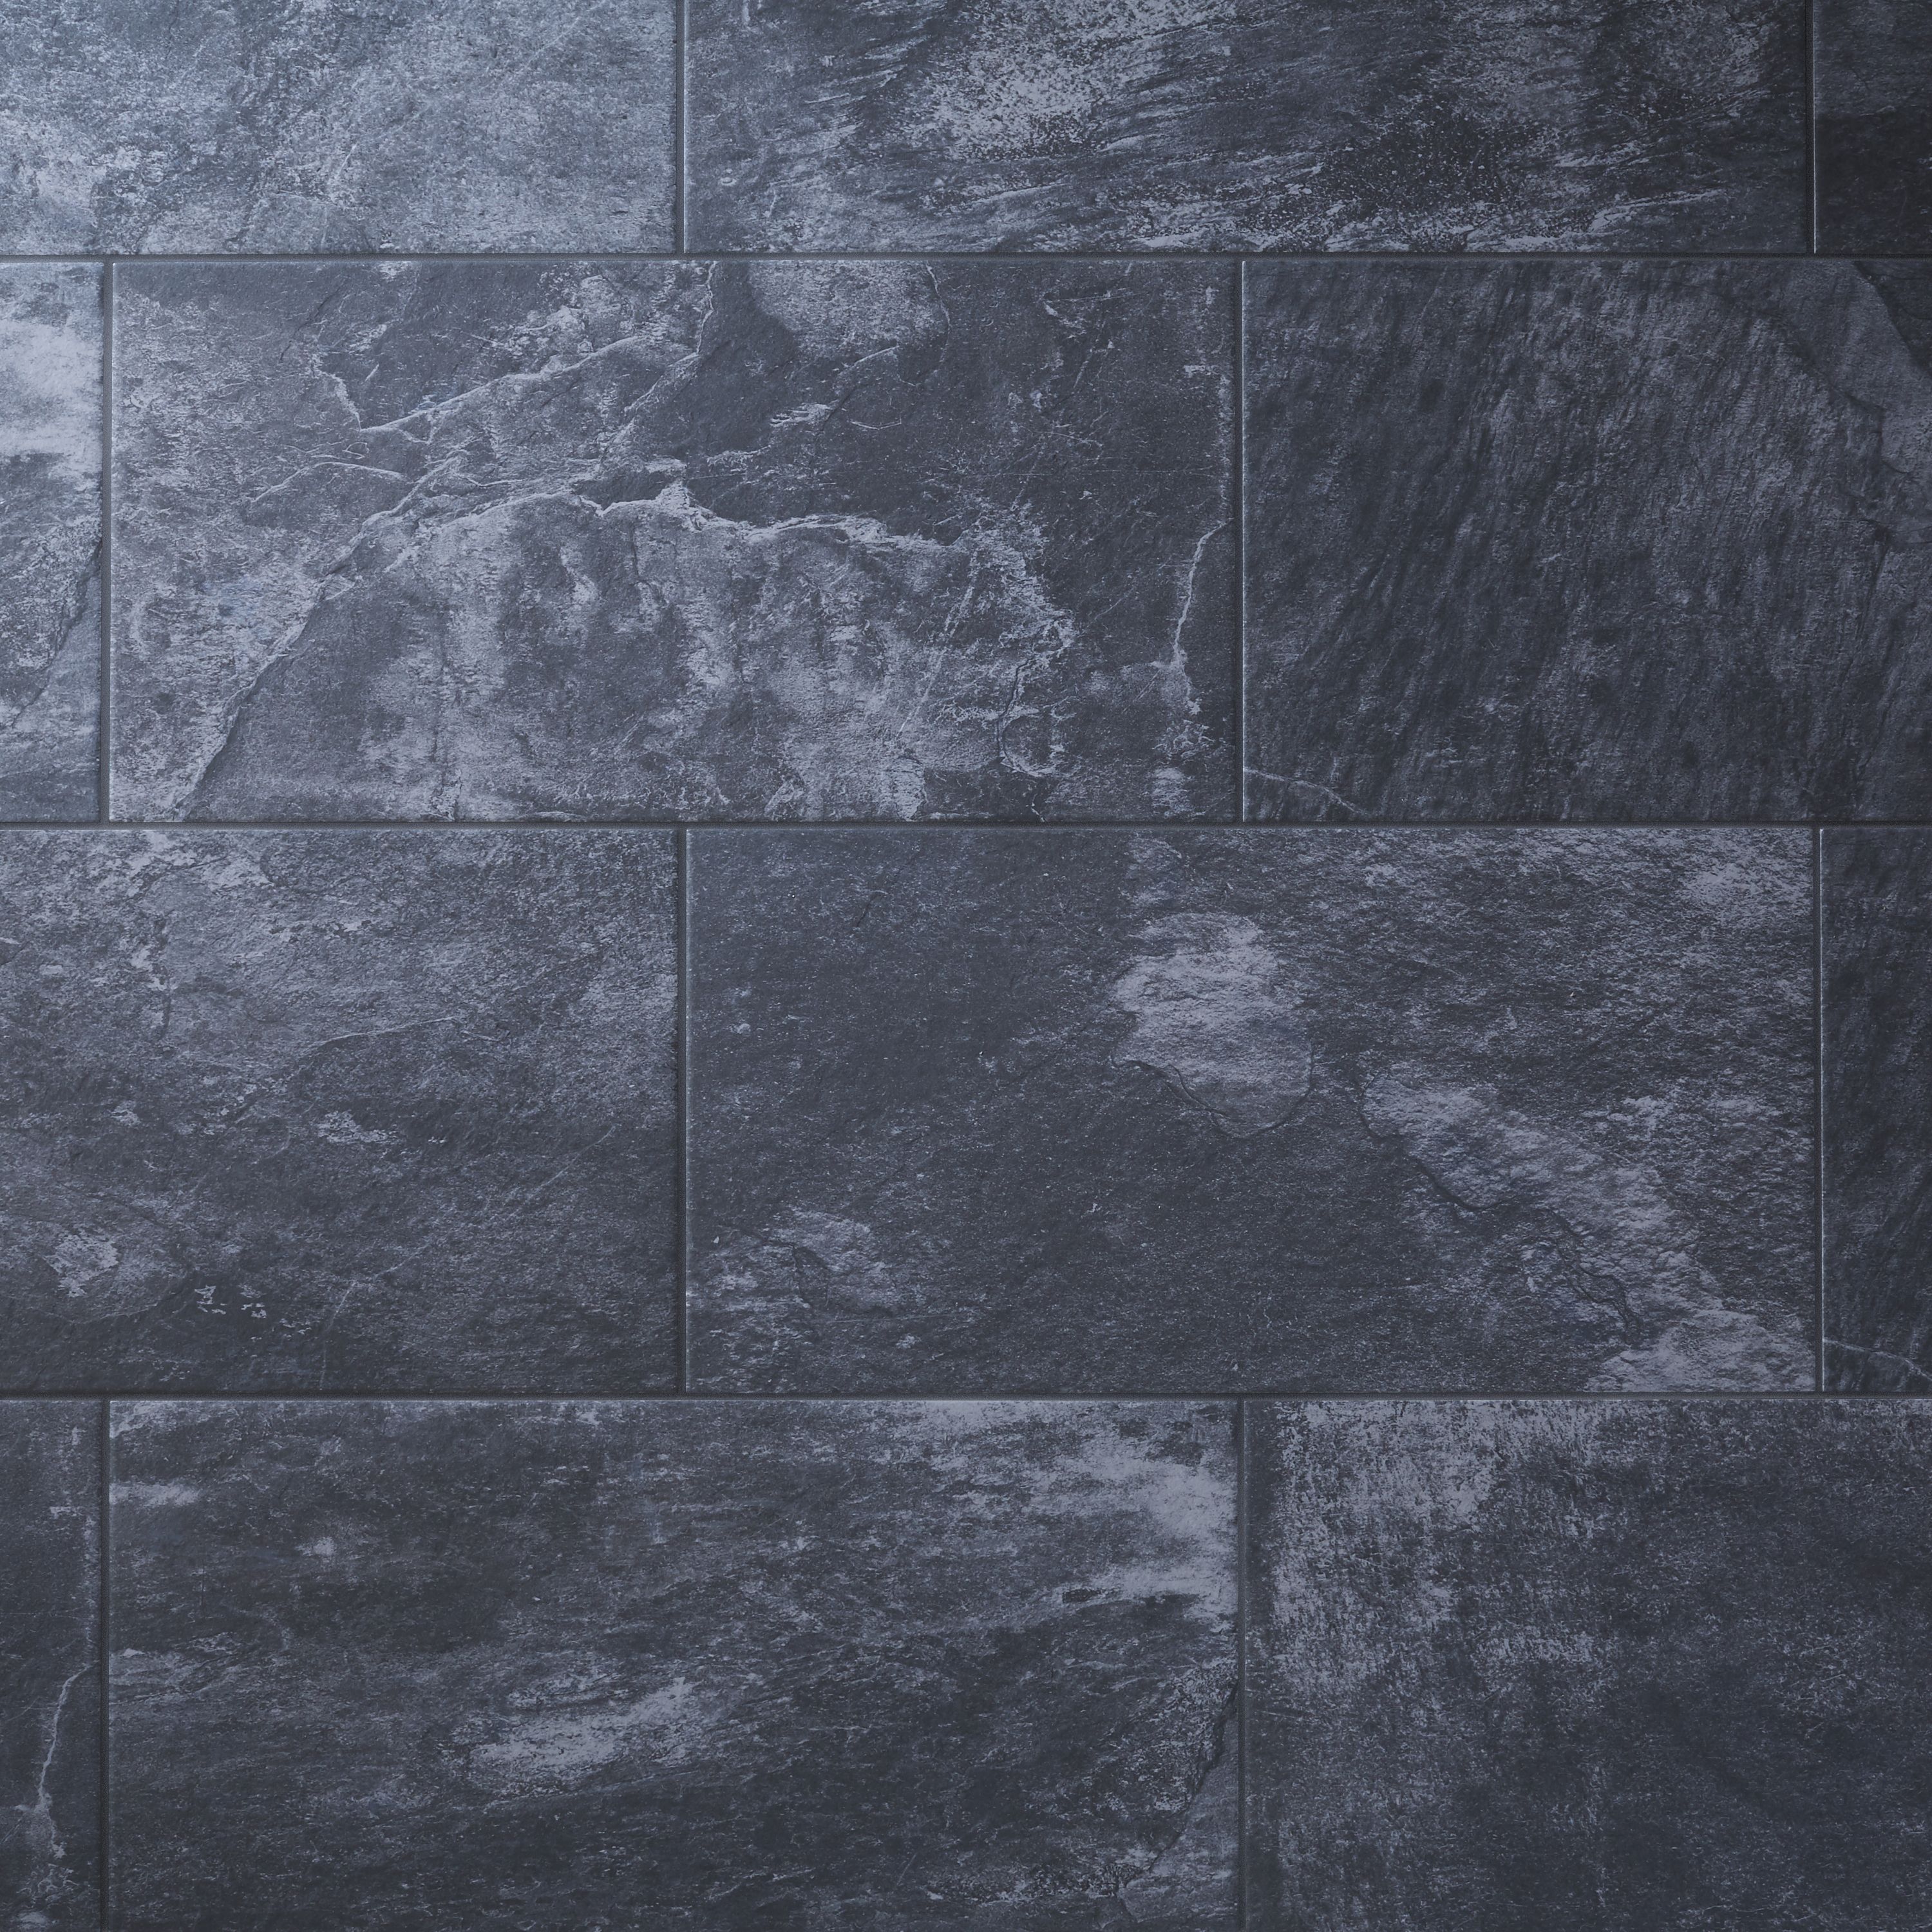 Shaded slate Anthracite Matt Porcelain Indoor Wall & floor Tile Sample